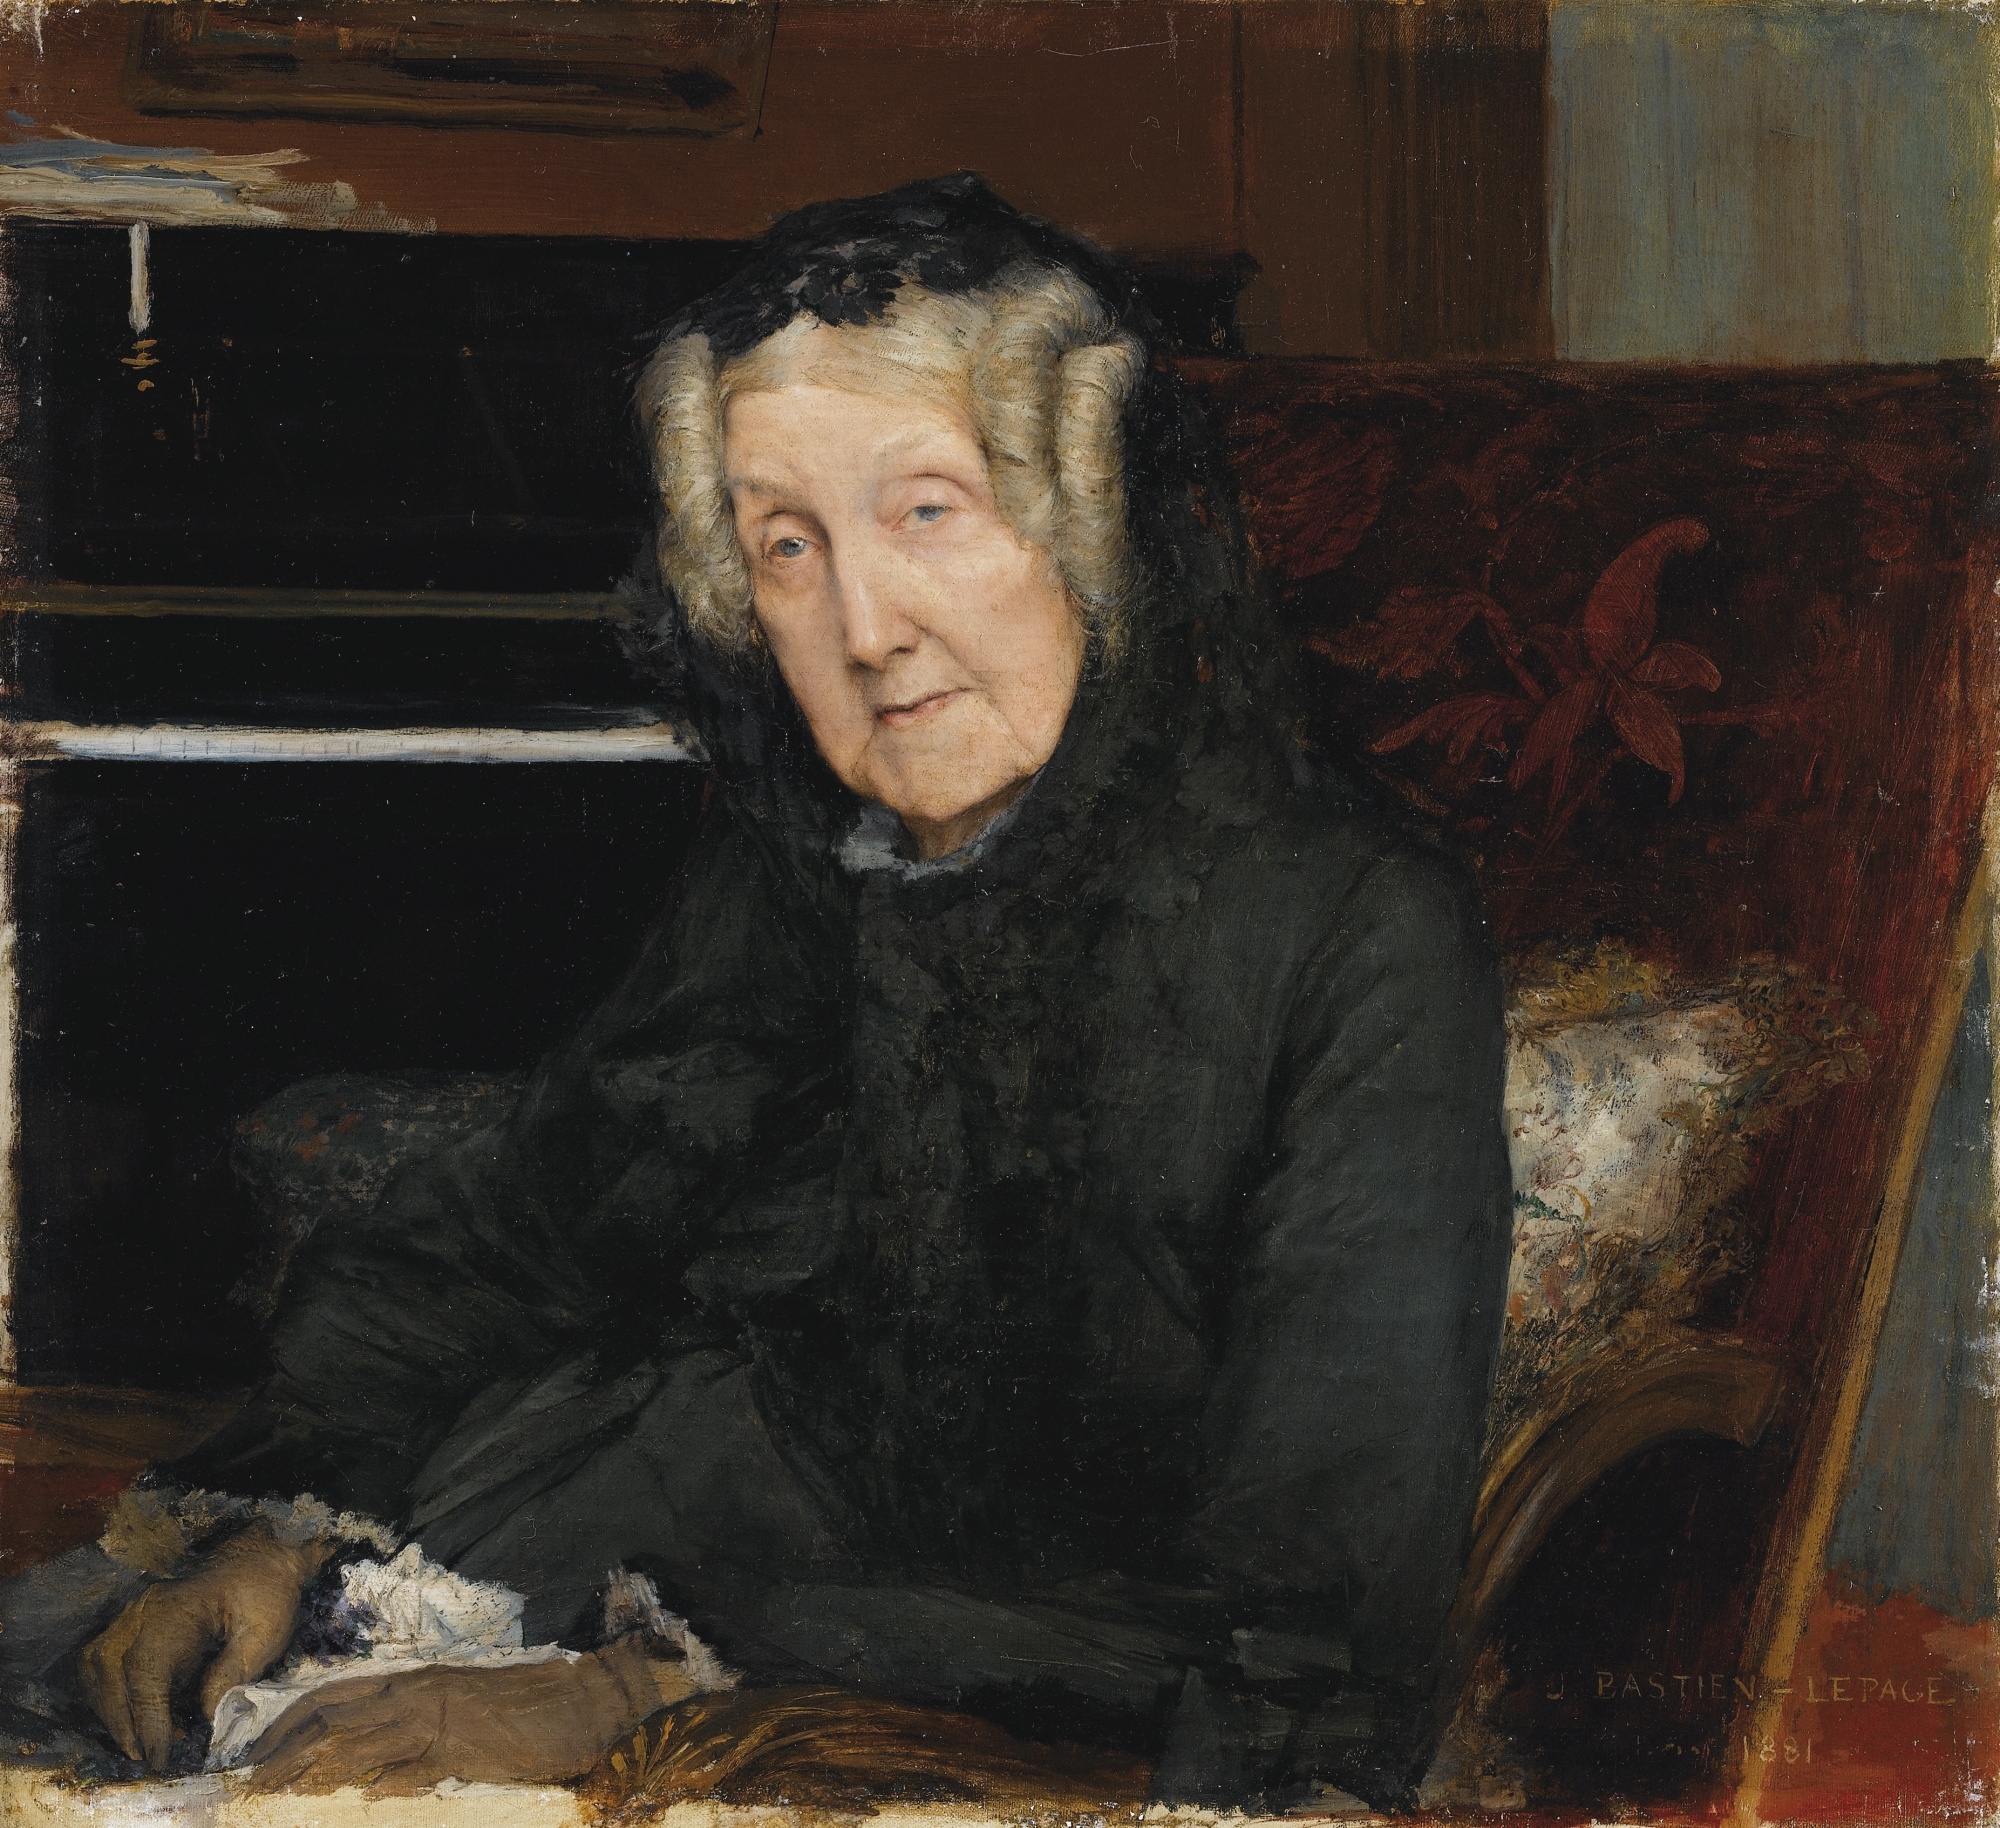 PORTRAIT DE MME WASKIEWICZ by Jules Bastien-Lepage, 1881